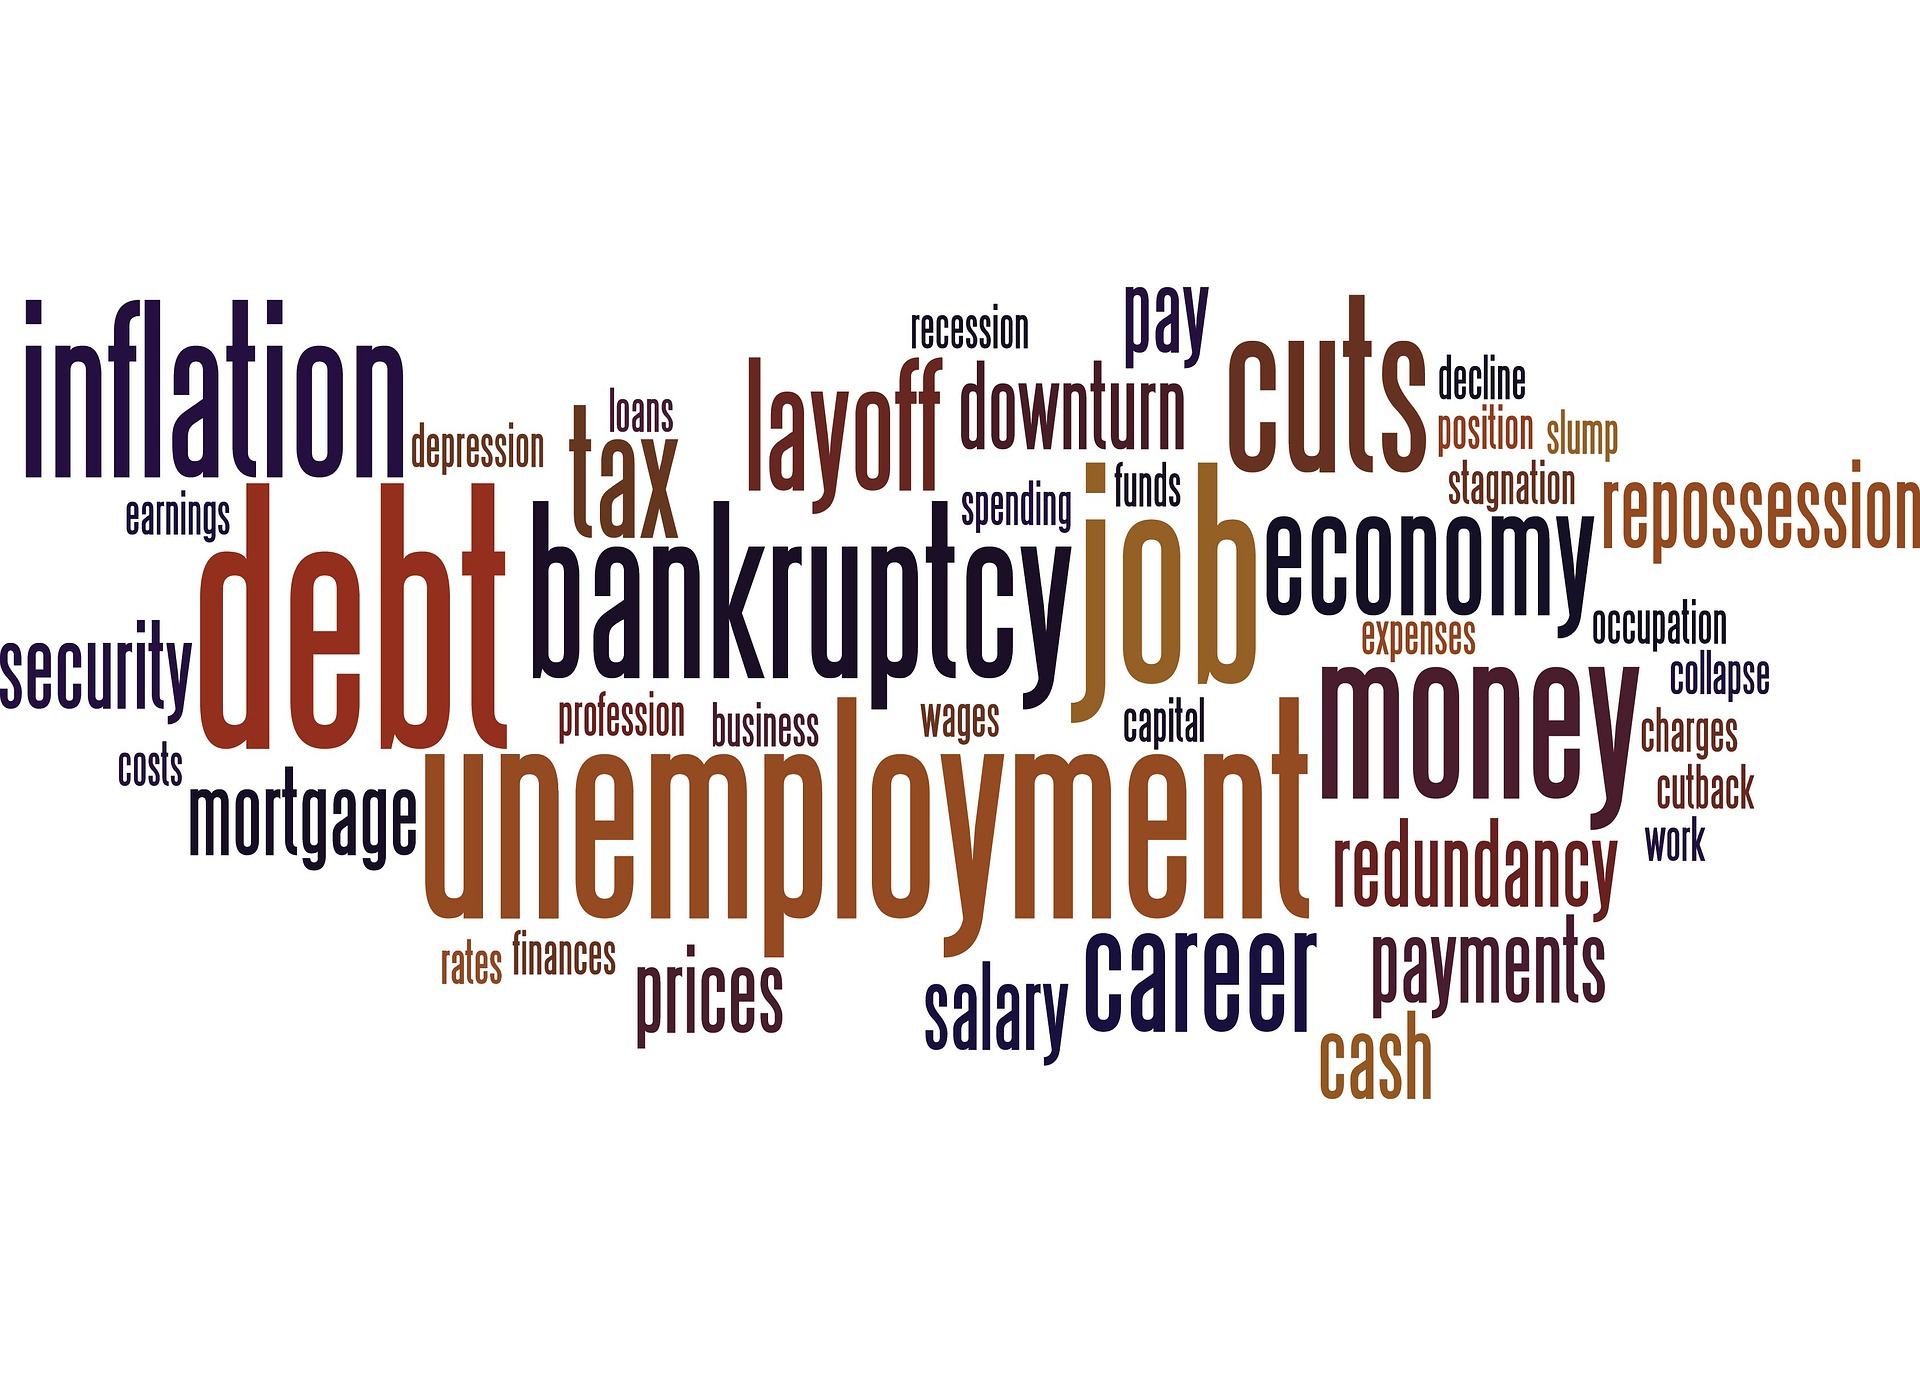 Bad News: Unemployment, inflation, debt